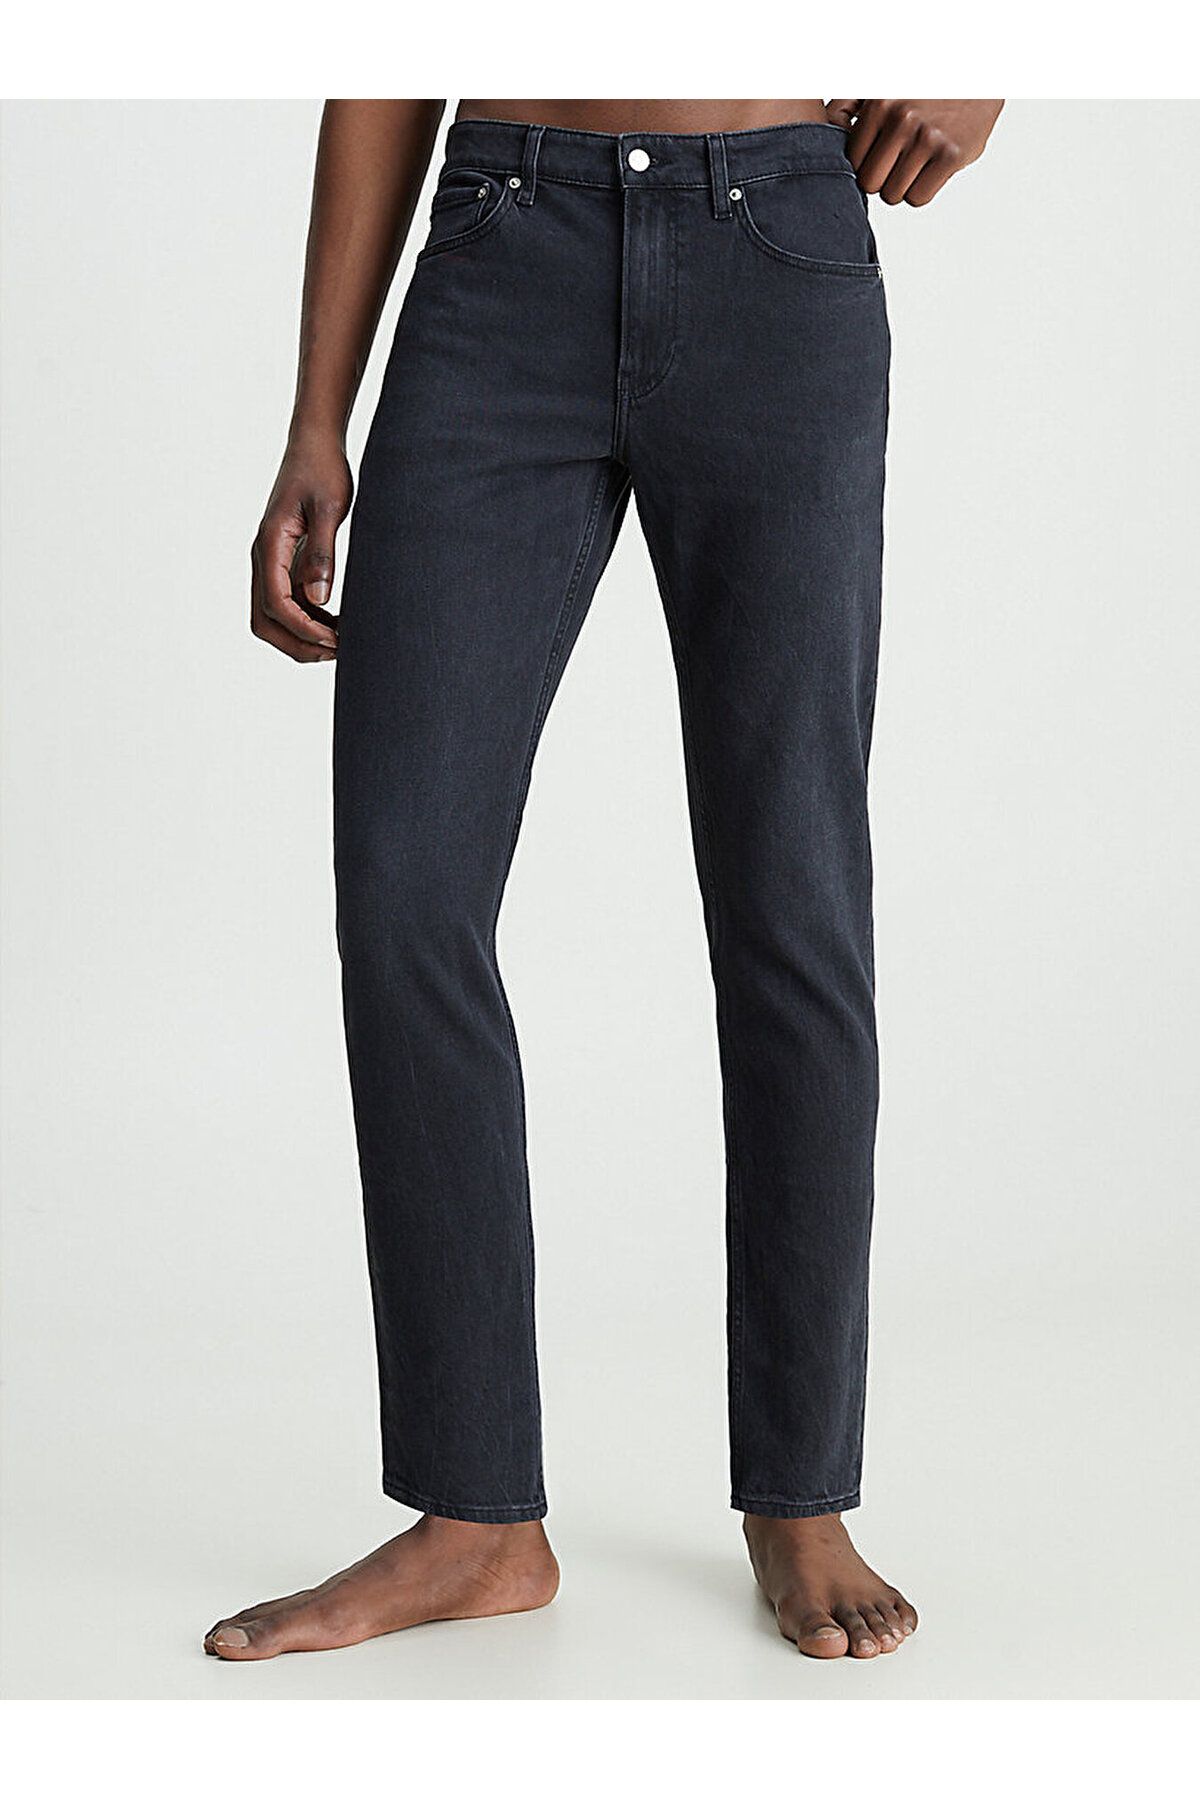 Calvin Klein Erkek Pamuklu Normal Bel 5 Cepli Düğmeli Siyah Jeans J30J323689-1BY